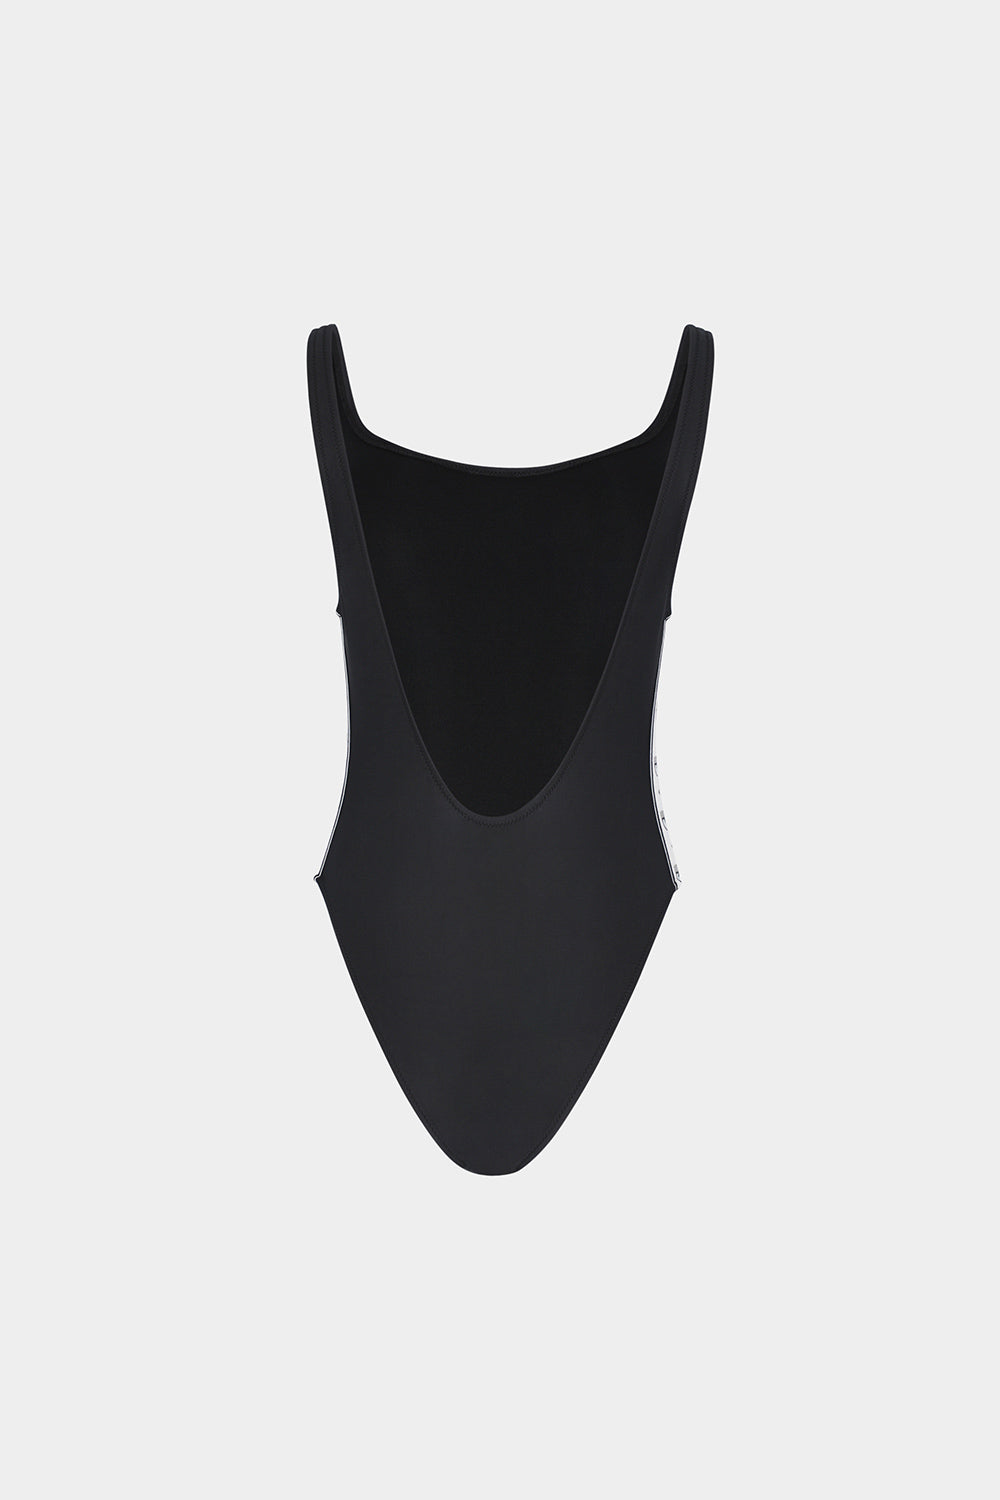 בגד ים שלם לנשים גב פתוח CHIARA FERRAGNI Vendome online | ונדום .